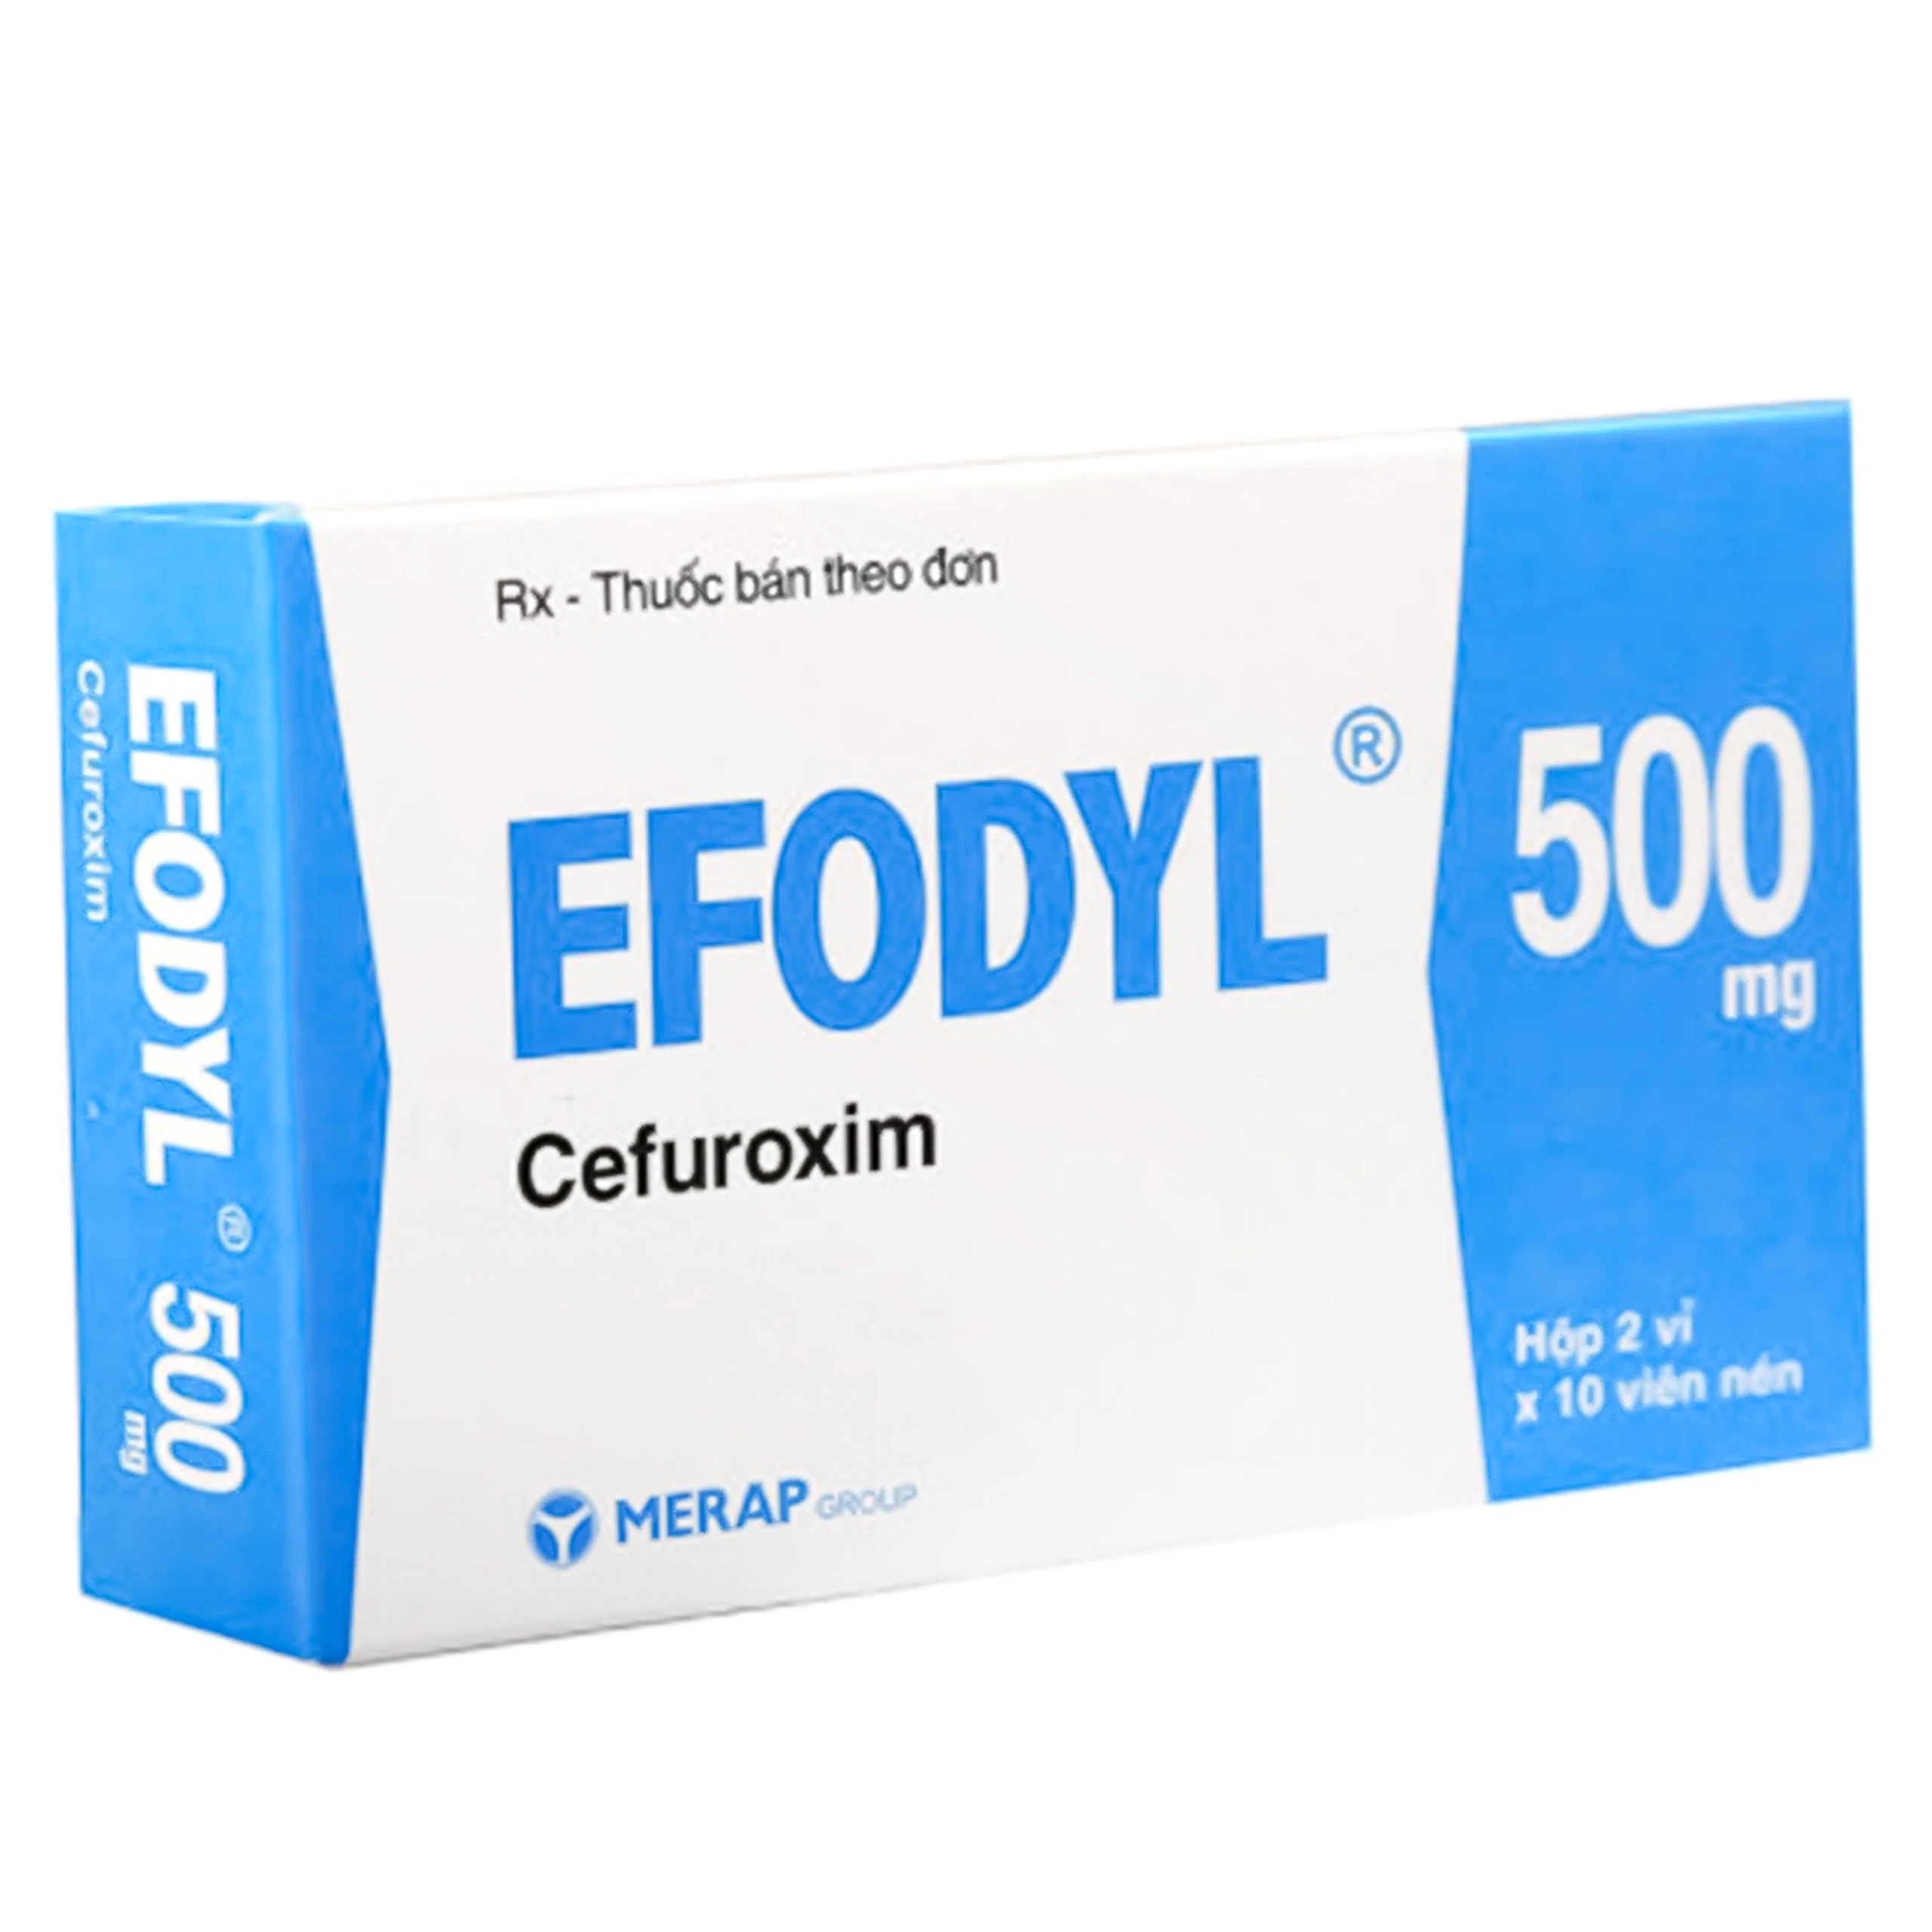 Thuốc Efodyl 500mg điều trị nhiễm khuẩn đường (2 vỉ x 10 viên)